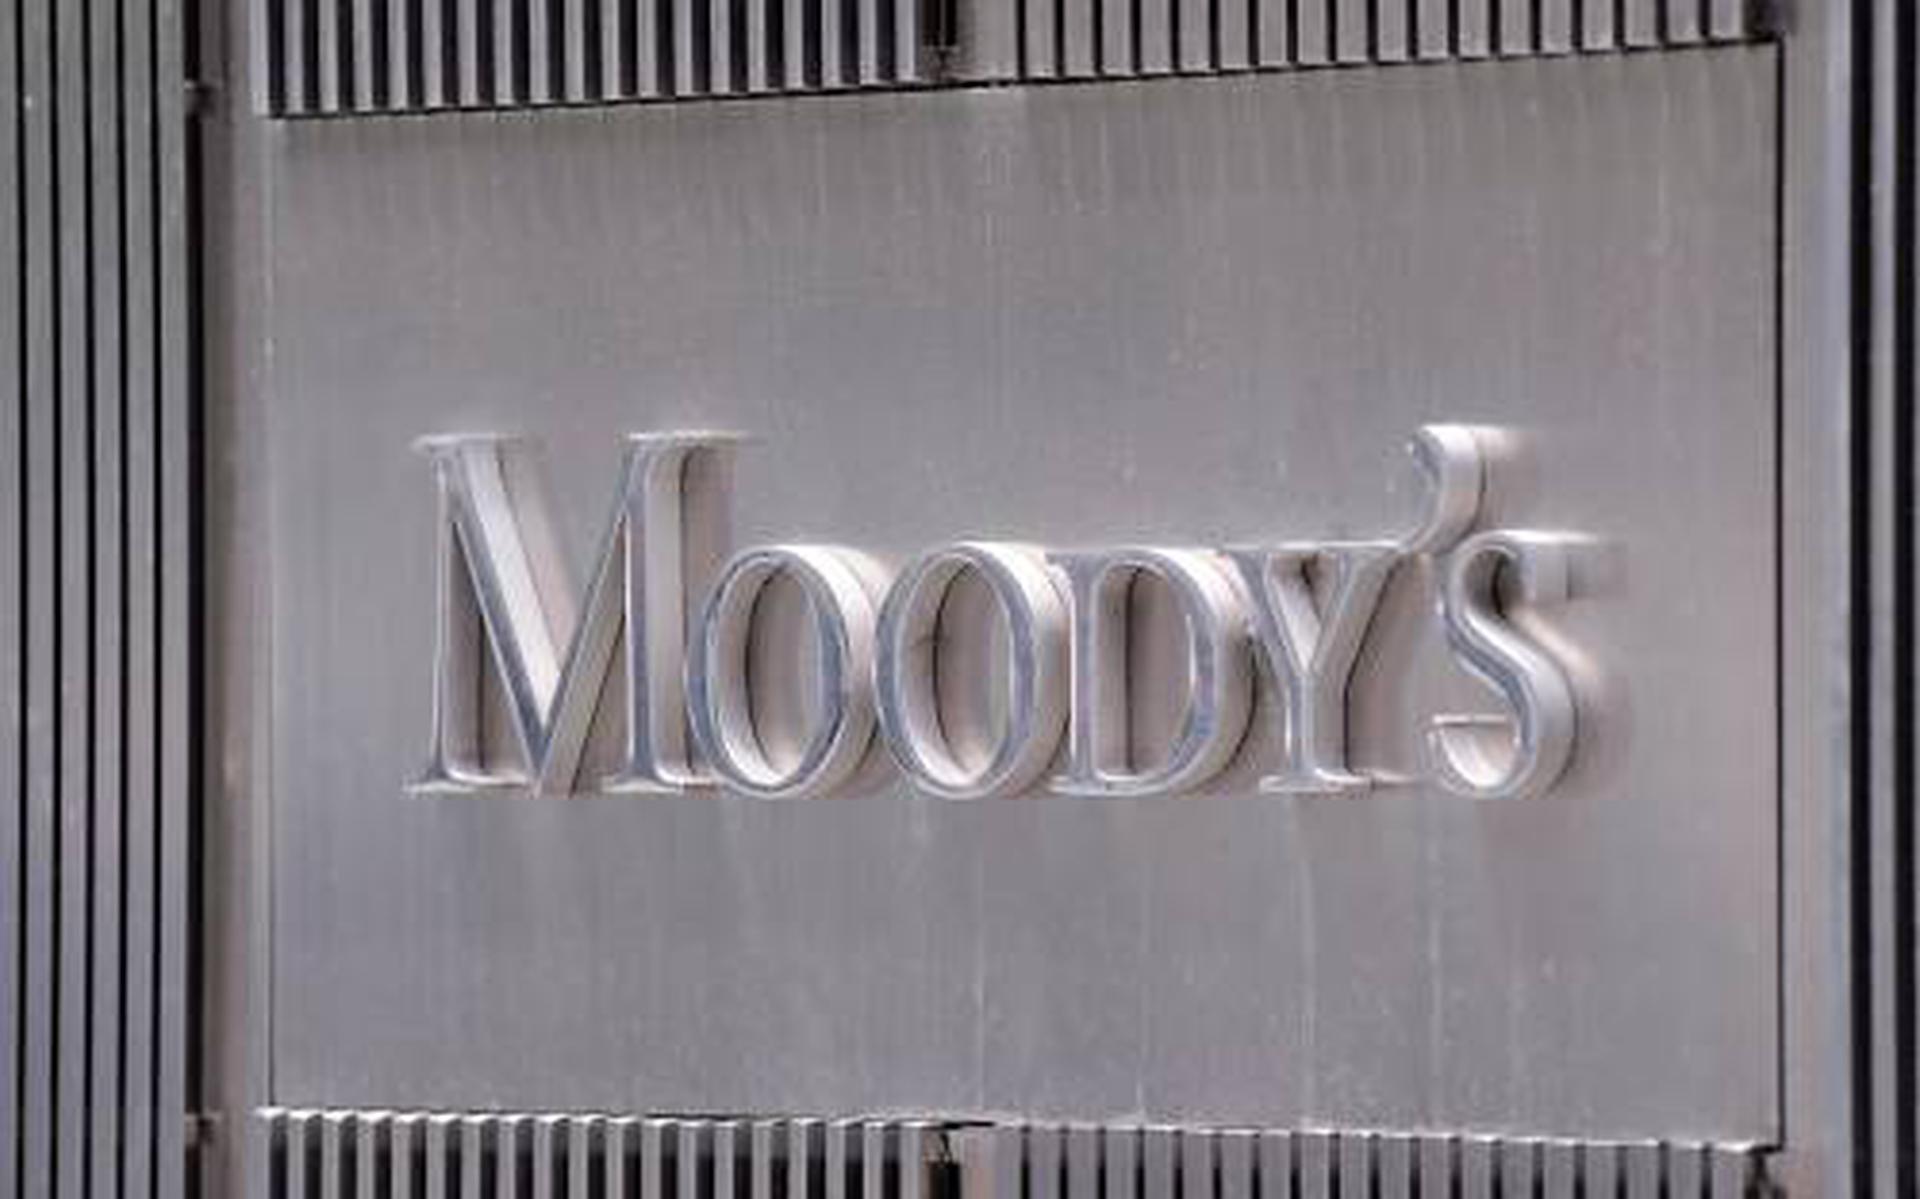 Moody's voorziet krimp Nederlandse economie